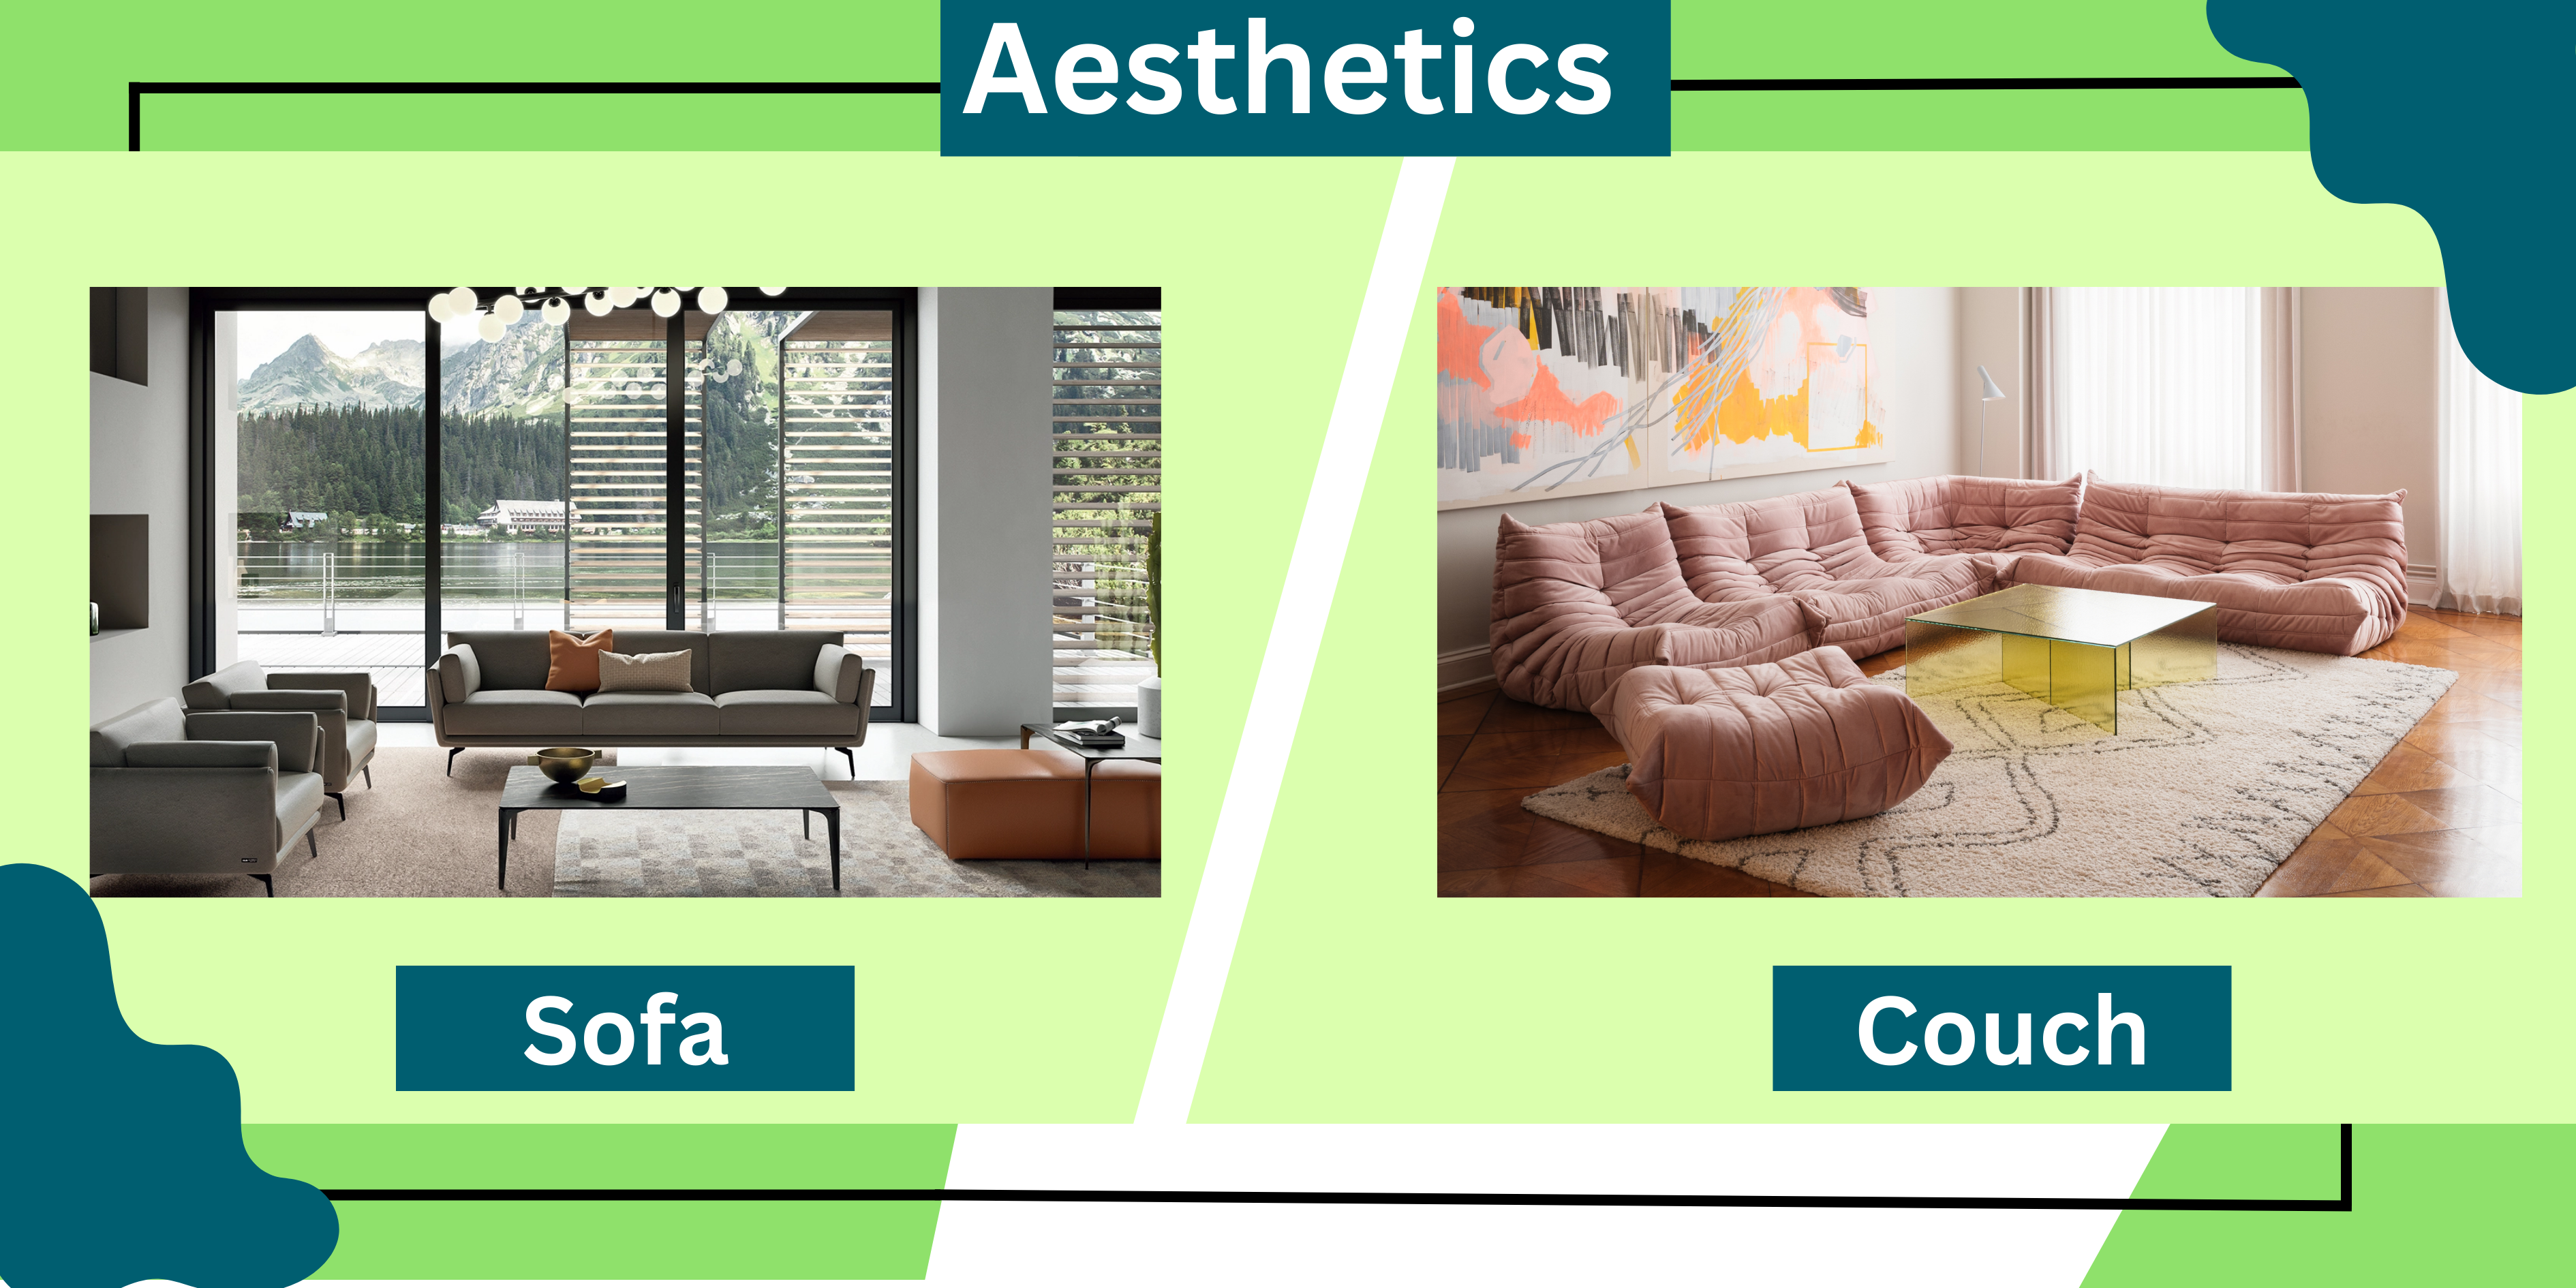 Aesthetics Sofa vs Couch